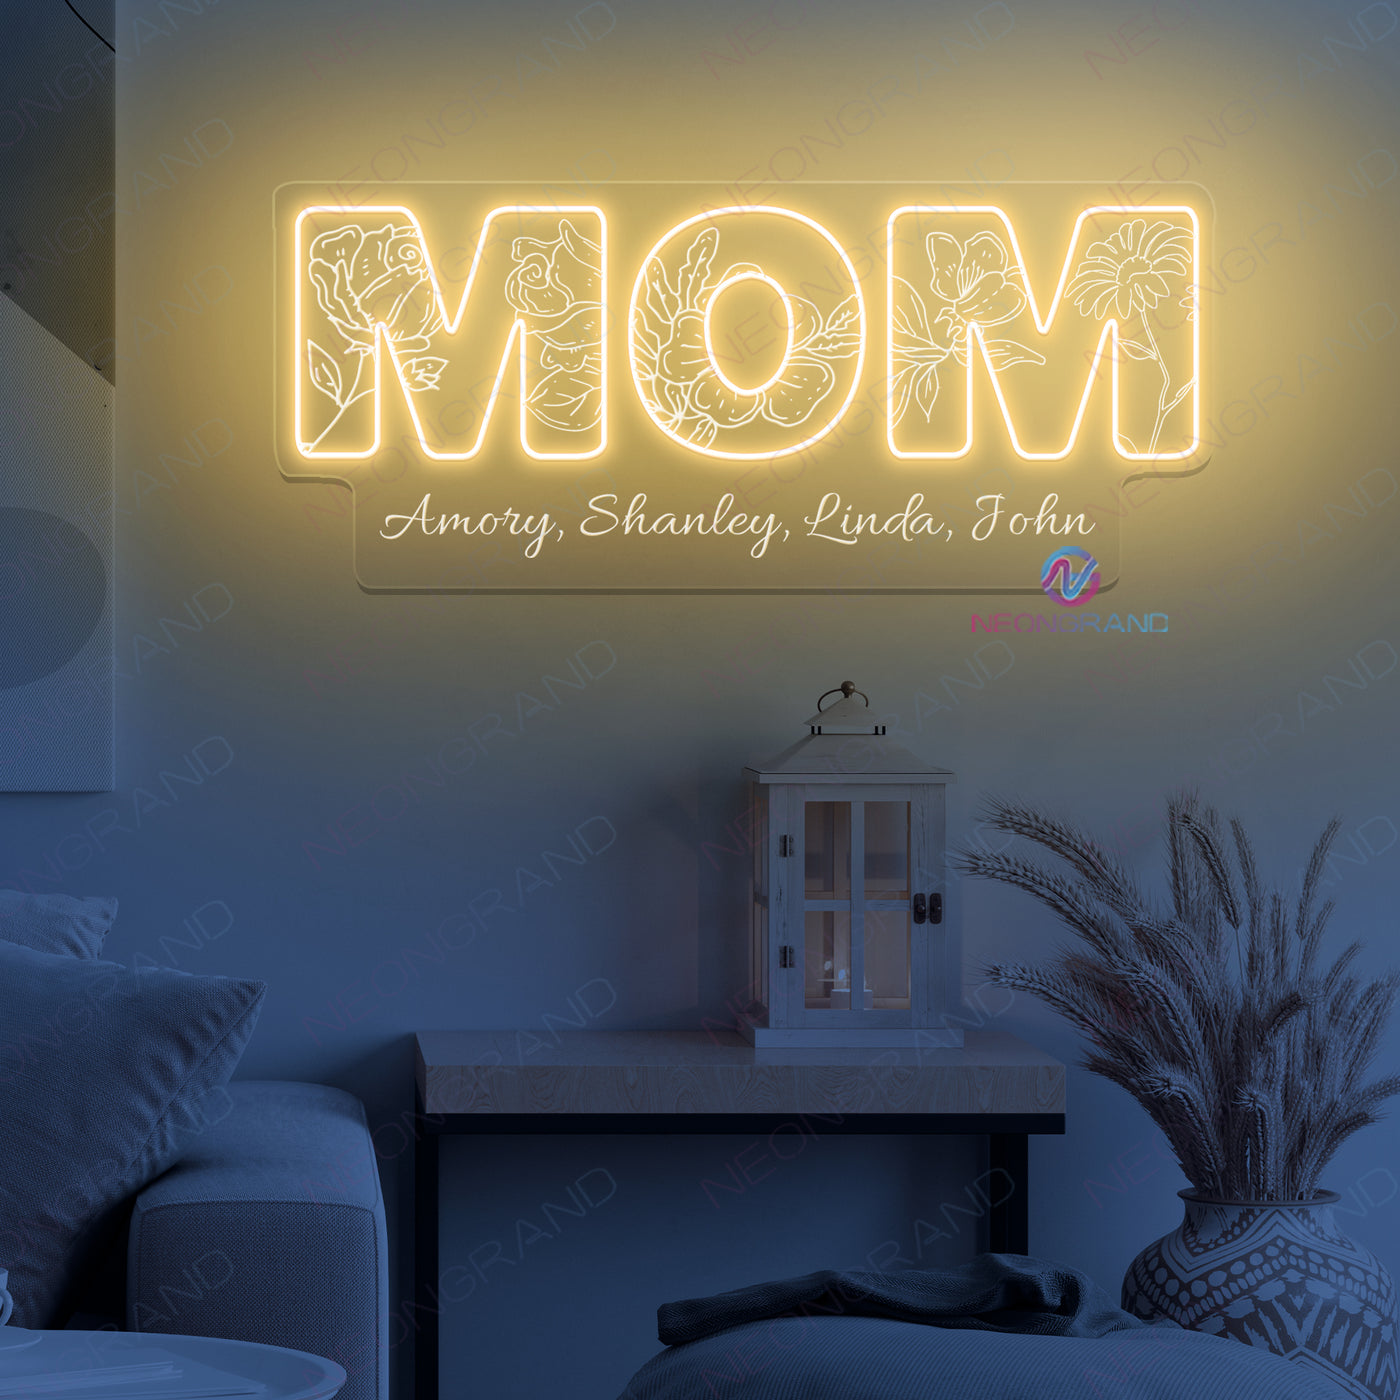 Mom's Garden Neon Sign Mother Led Light